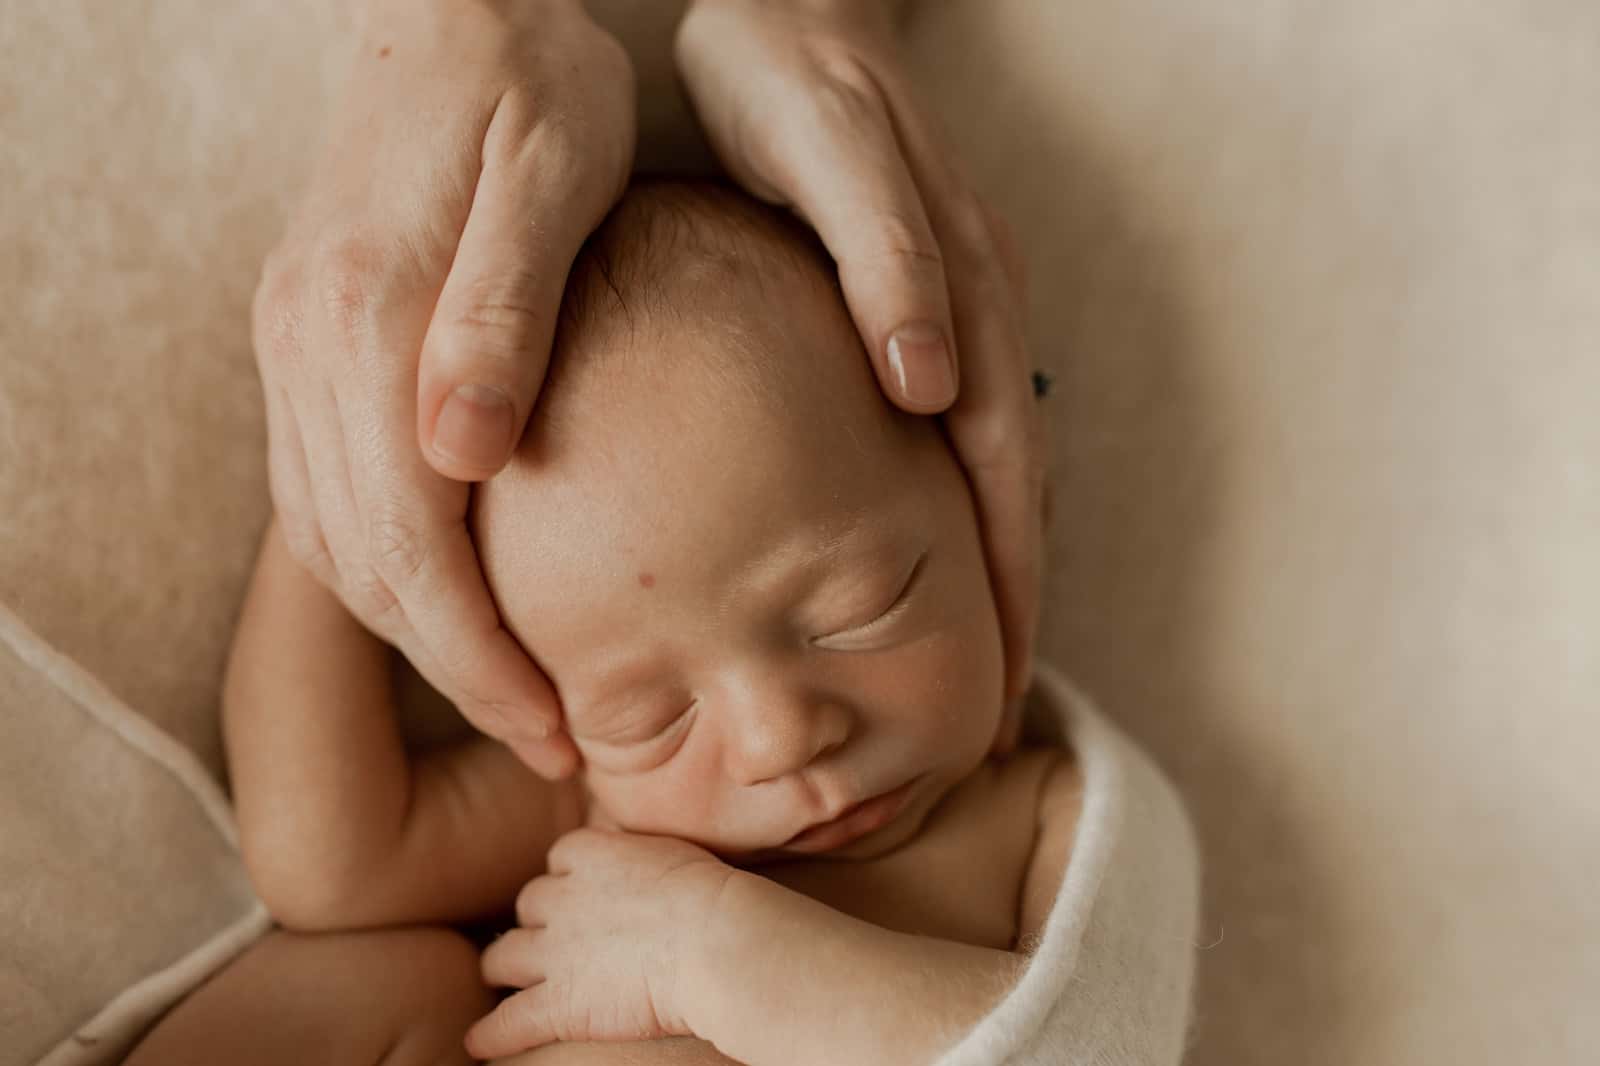 photographe bébé naissance allaitement famille caen calvados normandie